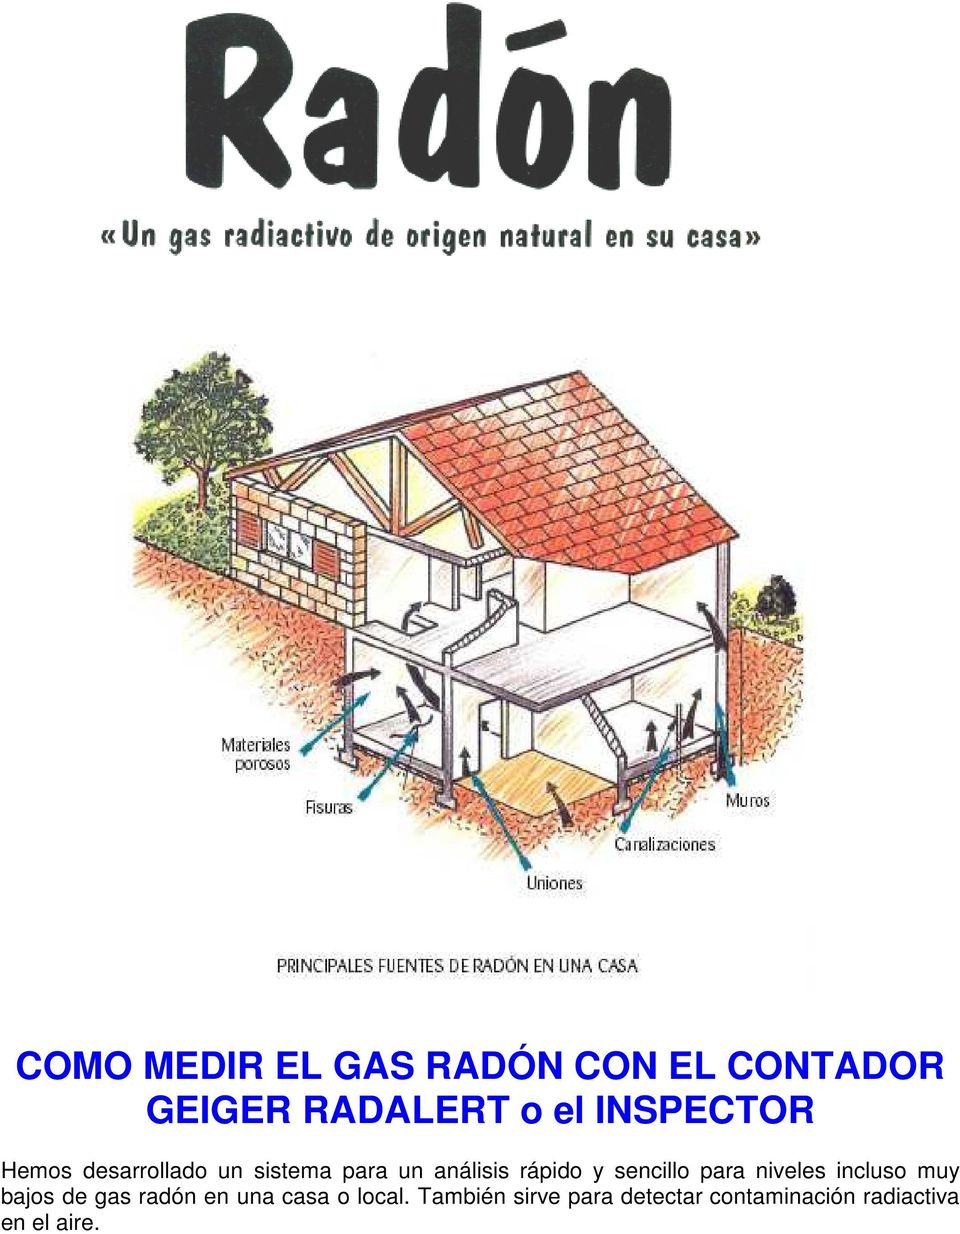 sencillo para niveles incluso muy bajos de gas radón en una casa o